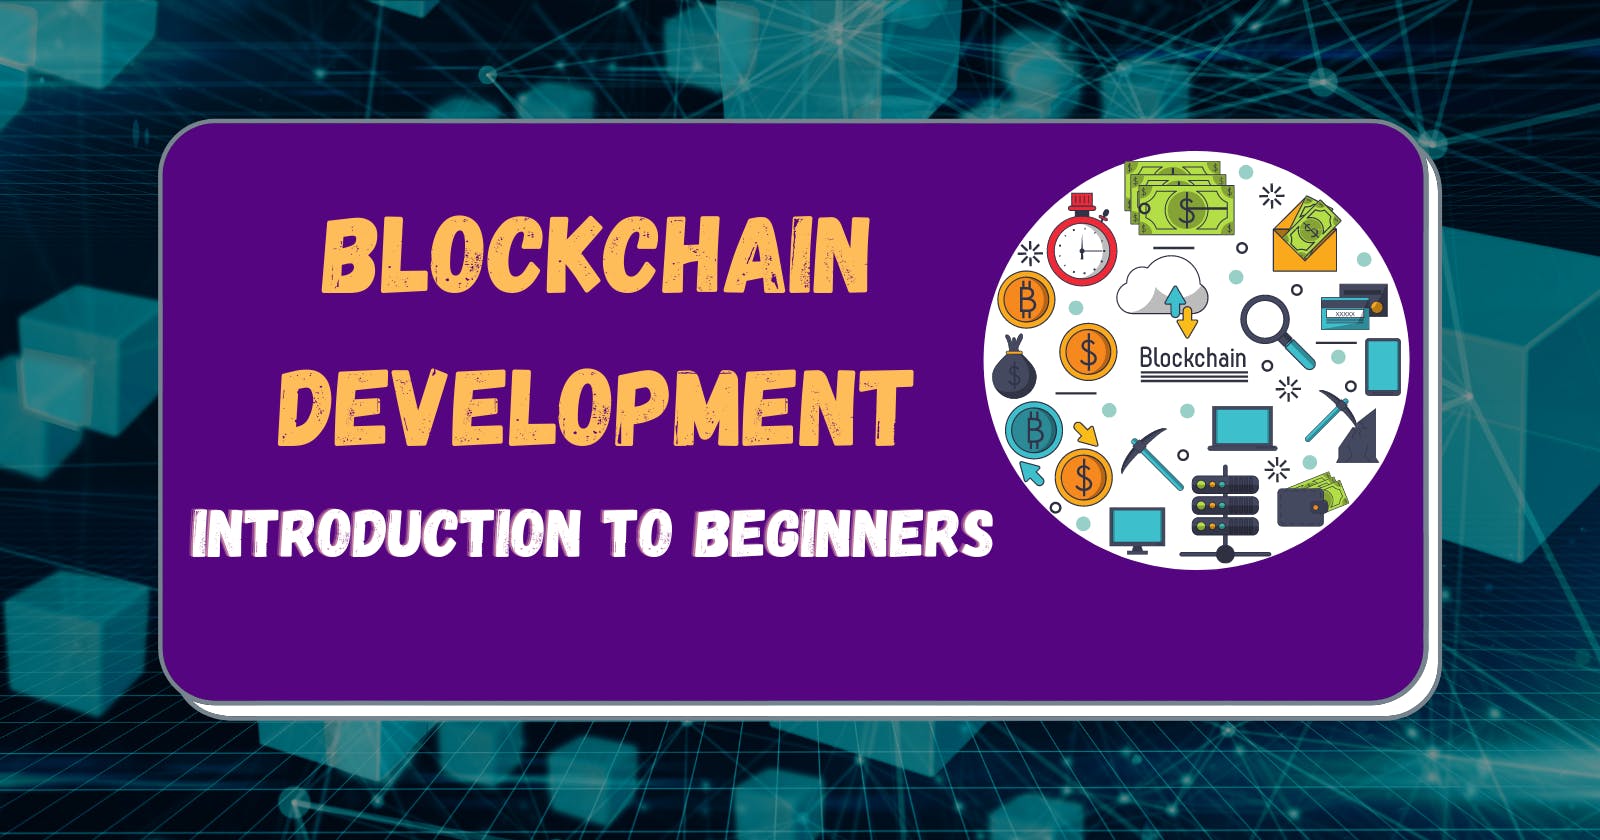 What is Blockchain Development - Blockchain Definition
for Beginners